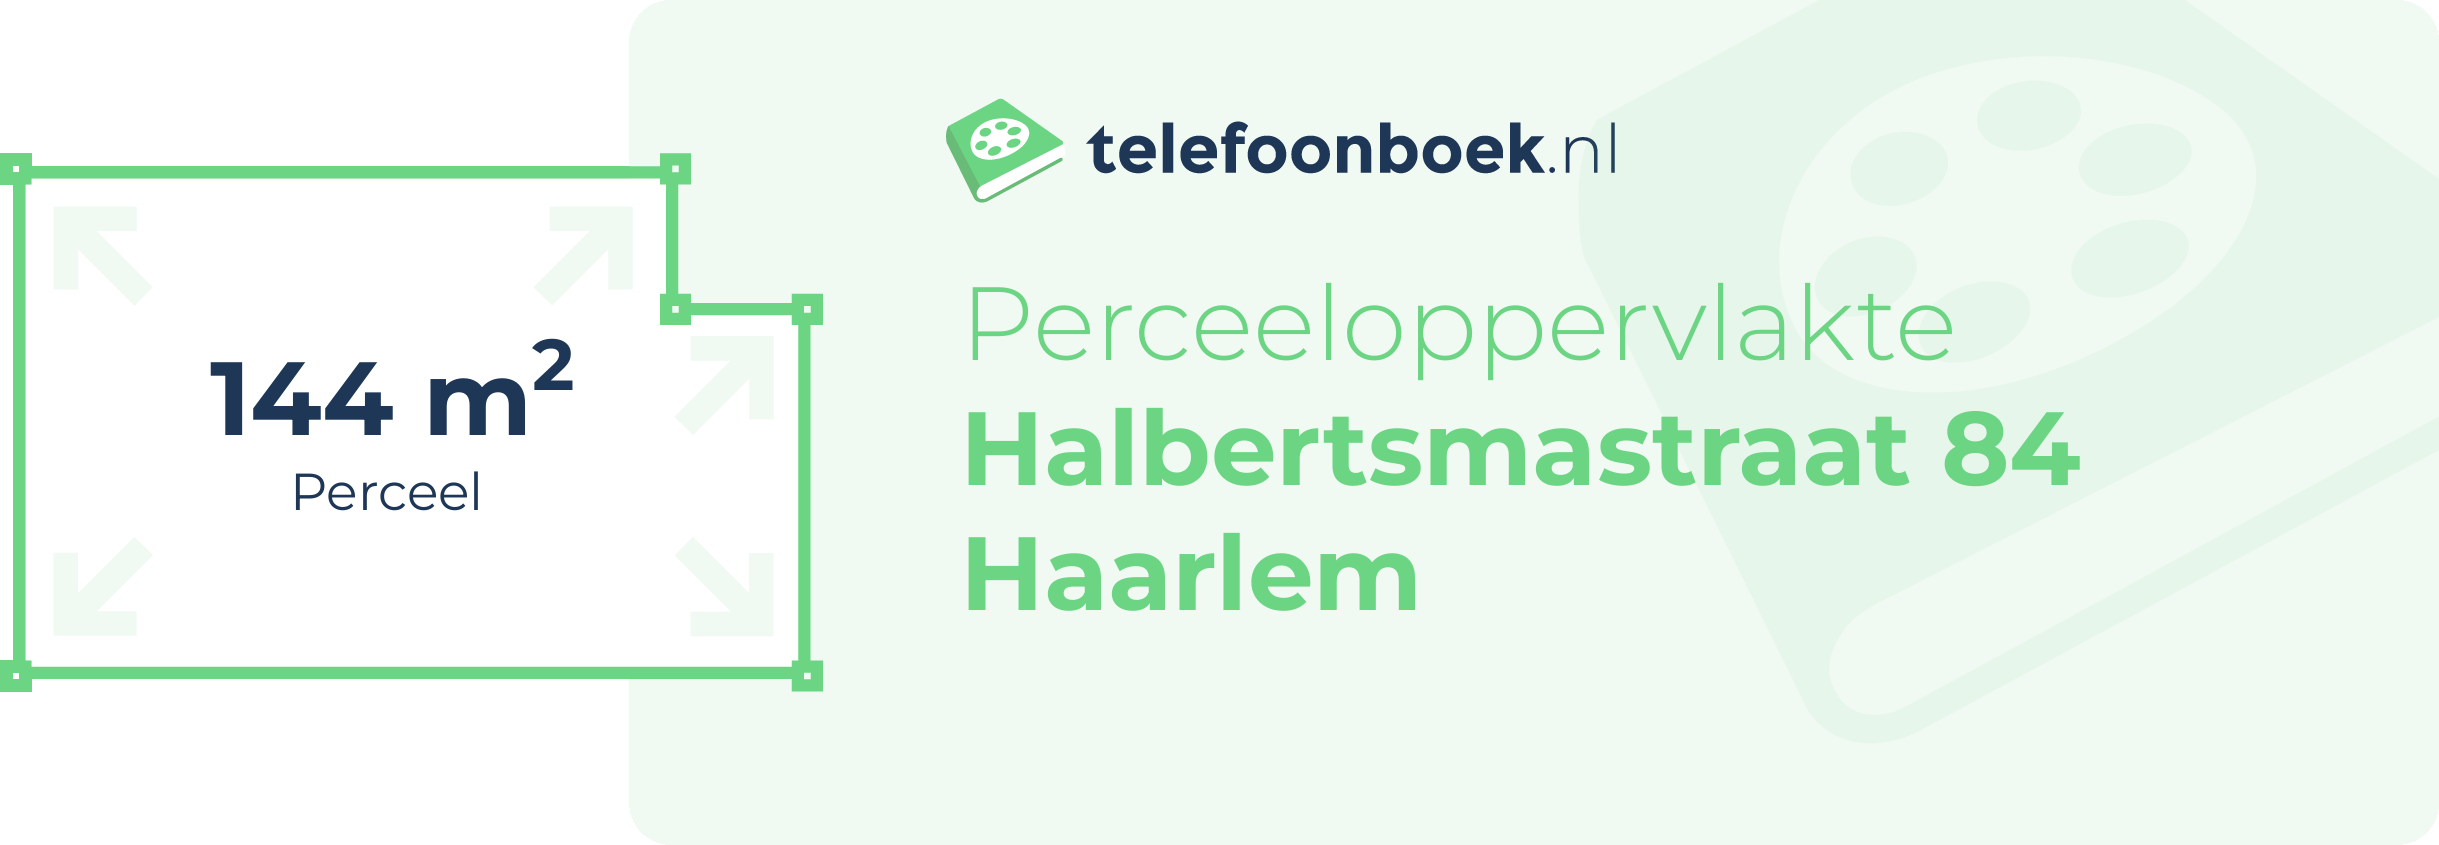 Perceeloppervlakte Halbertsmastraat 84 Haarlem